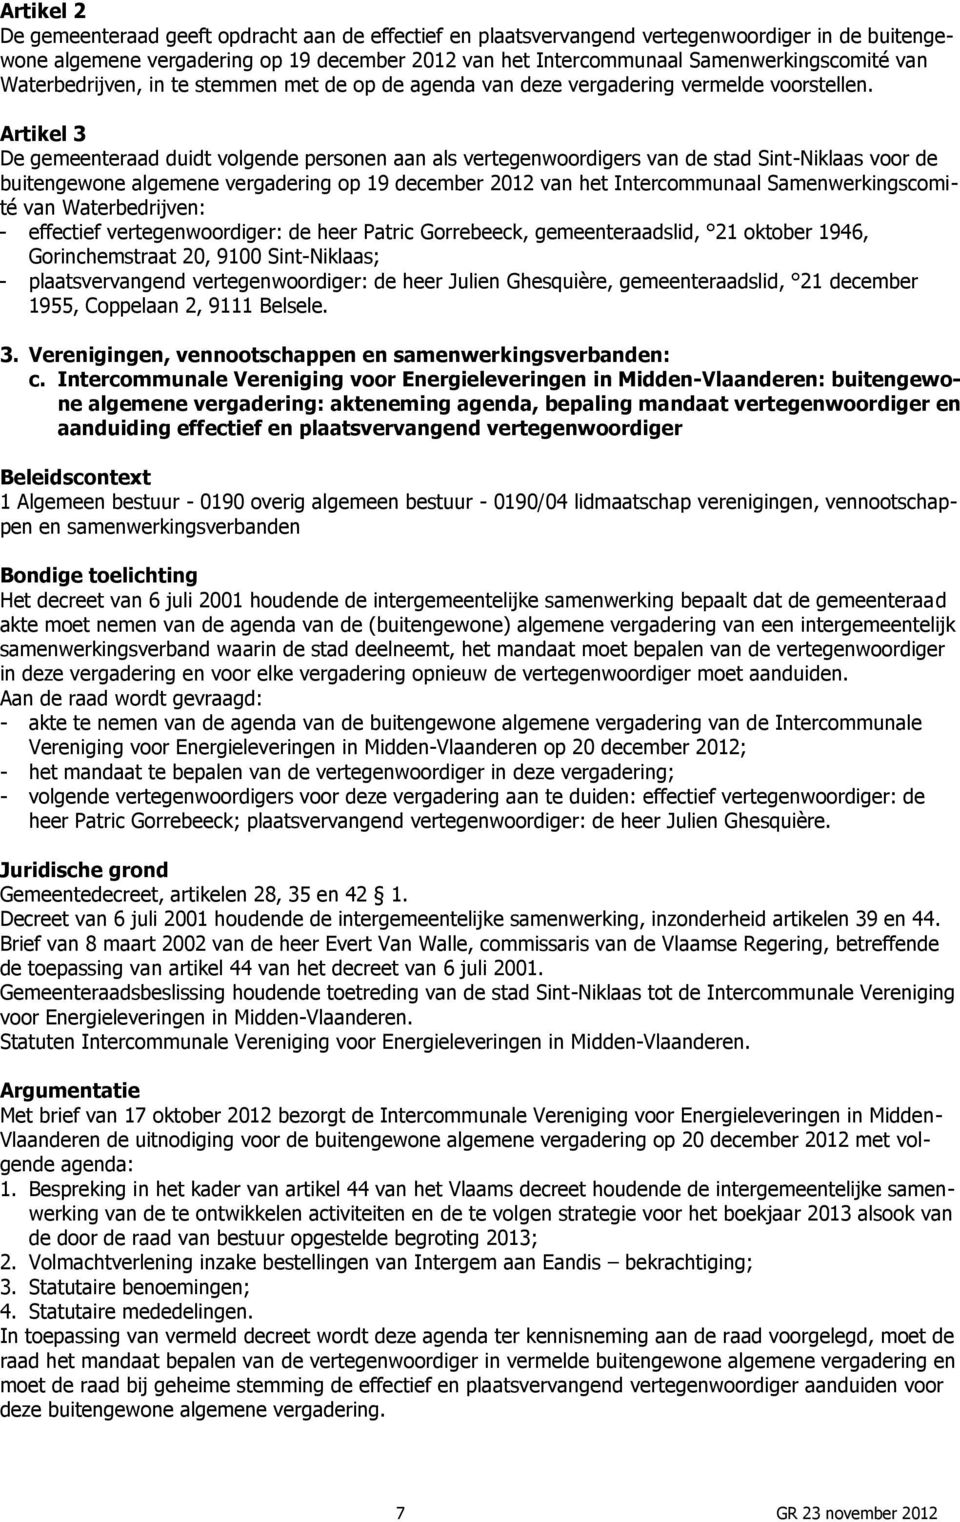 Artikel 3 De gemeenteraad duidt volgende personen aan als vertegenwoordigers van de stad Sint-Niklaas voor de buitengewone algemene vergadering op 19 december 2012 van het Intercommunaal